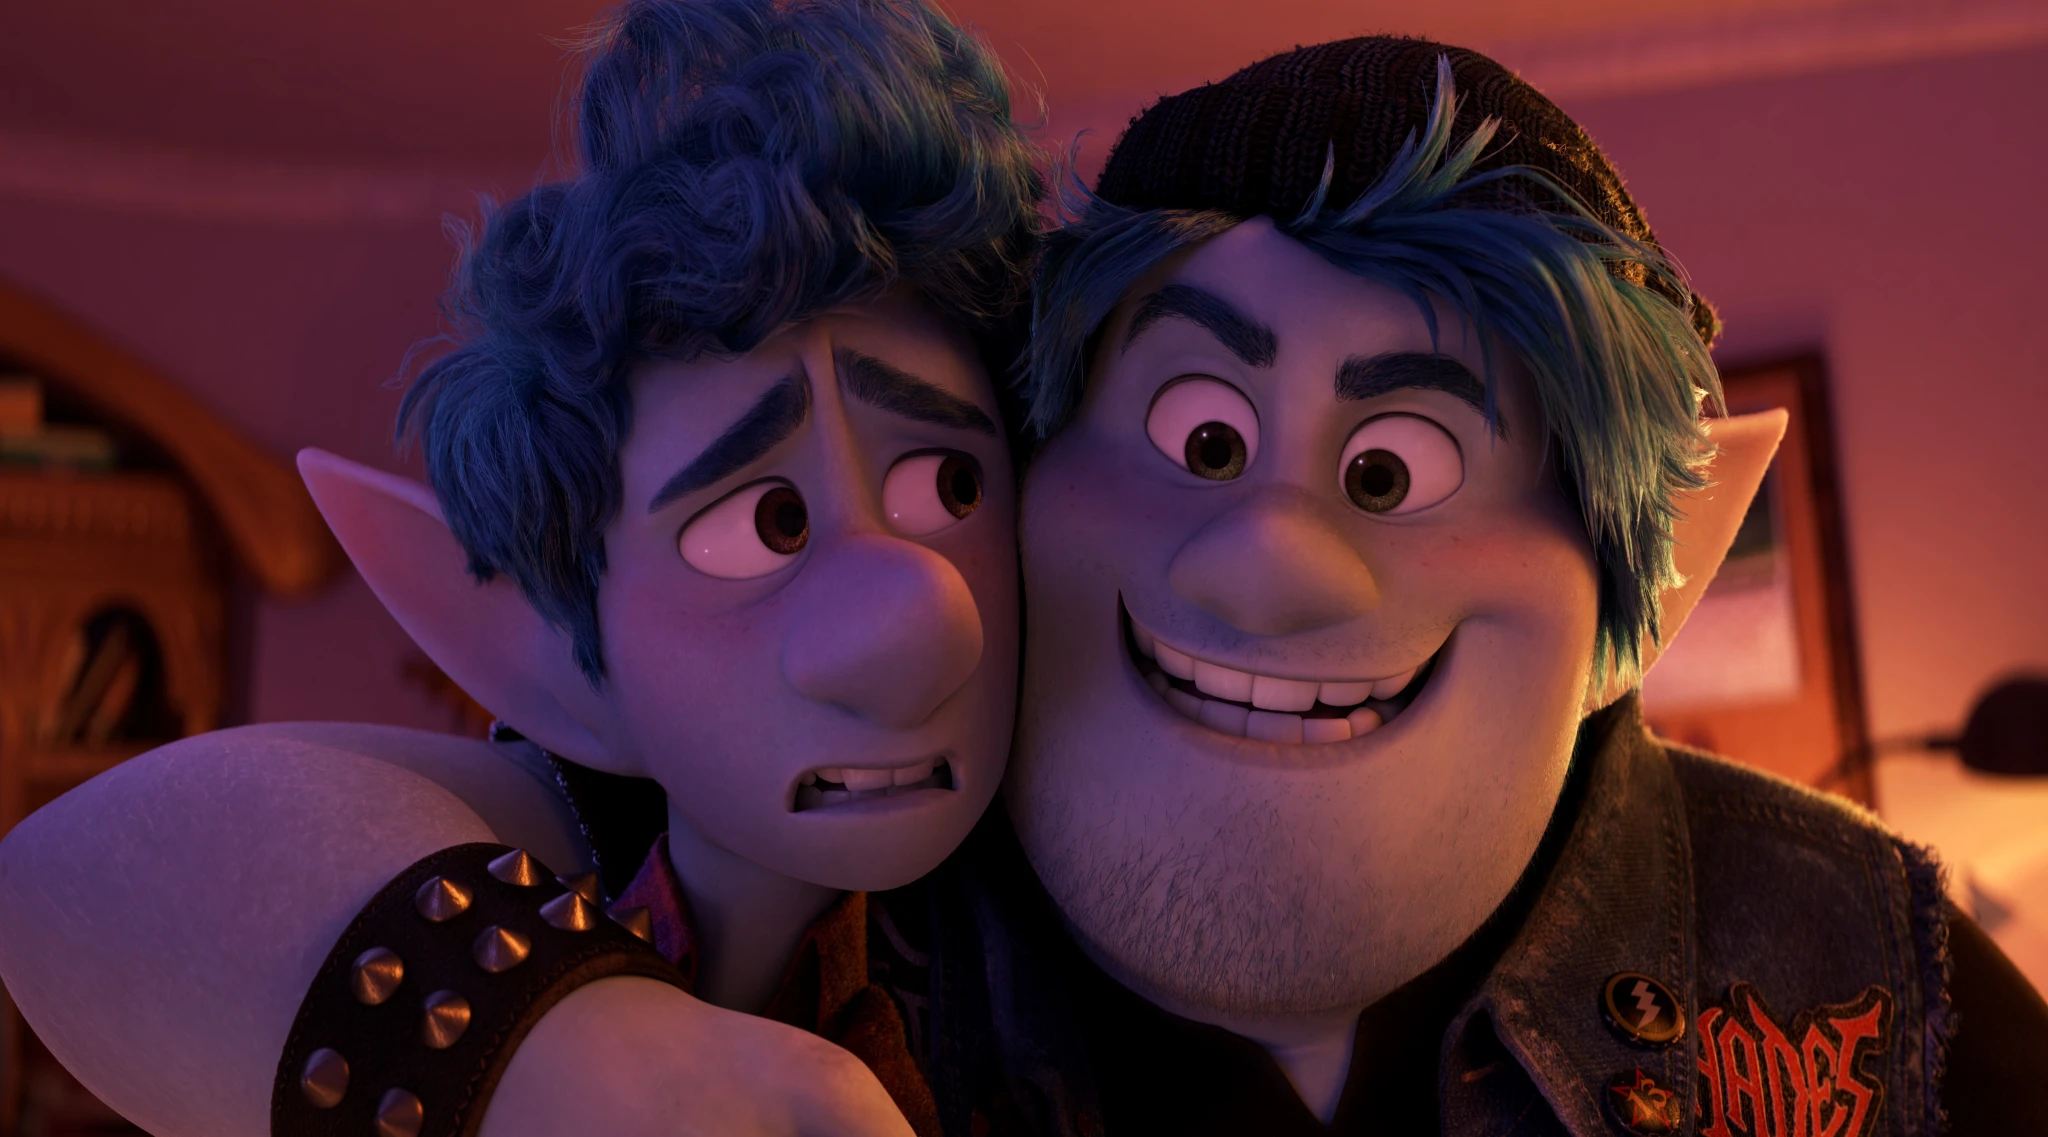 The Real Sibling Story Behind Pixar's "Onward"